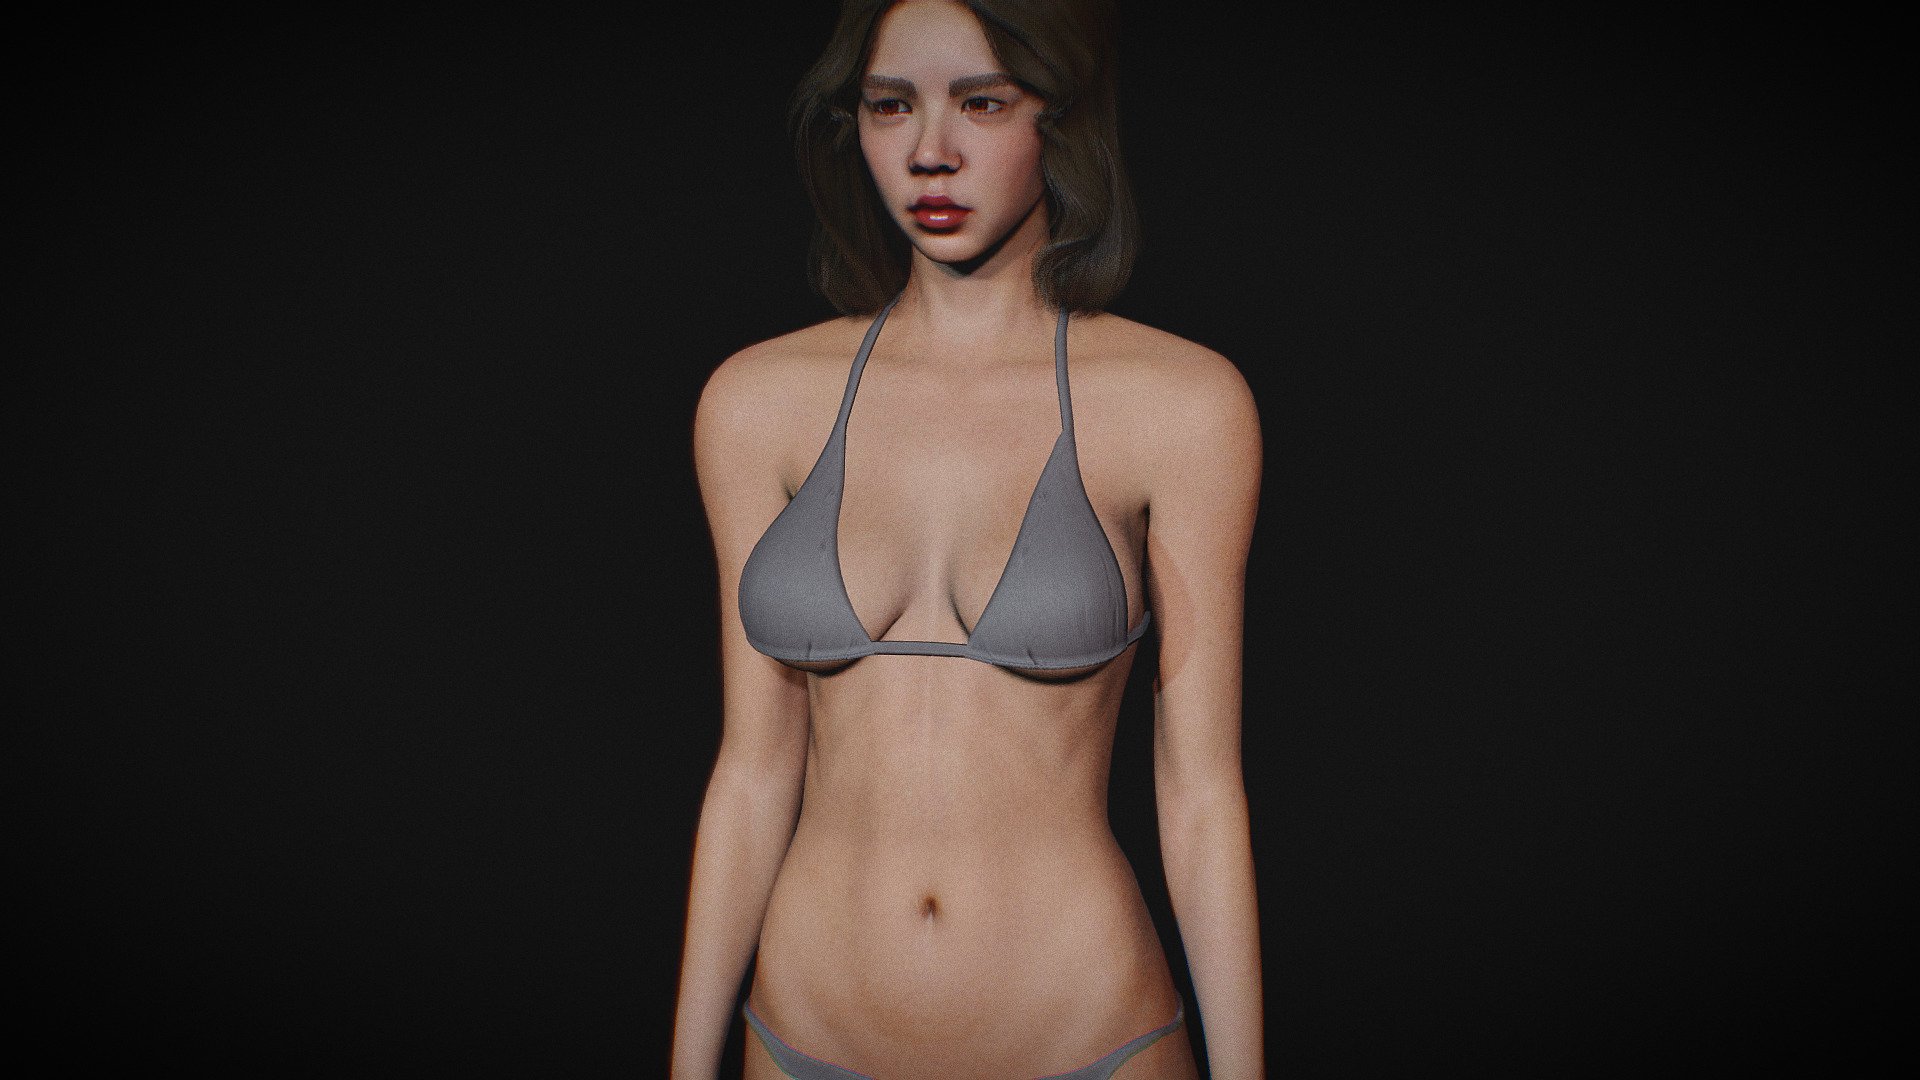 body - 3D model by Cg Stuff (@bokeh) 3d model